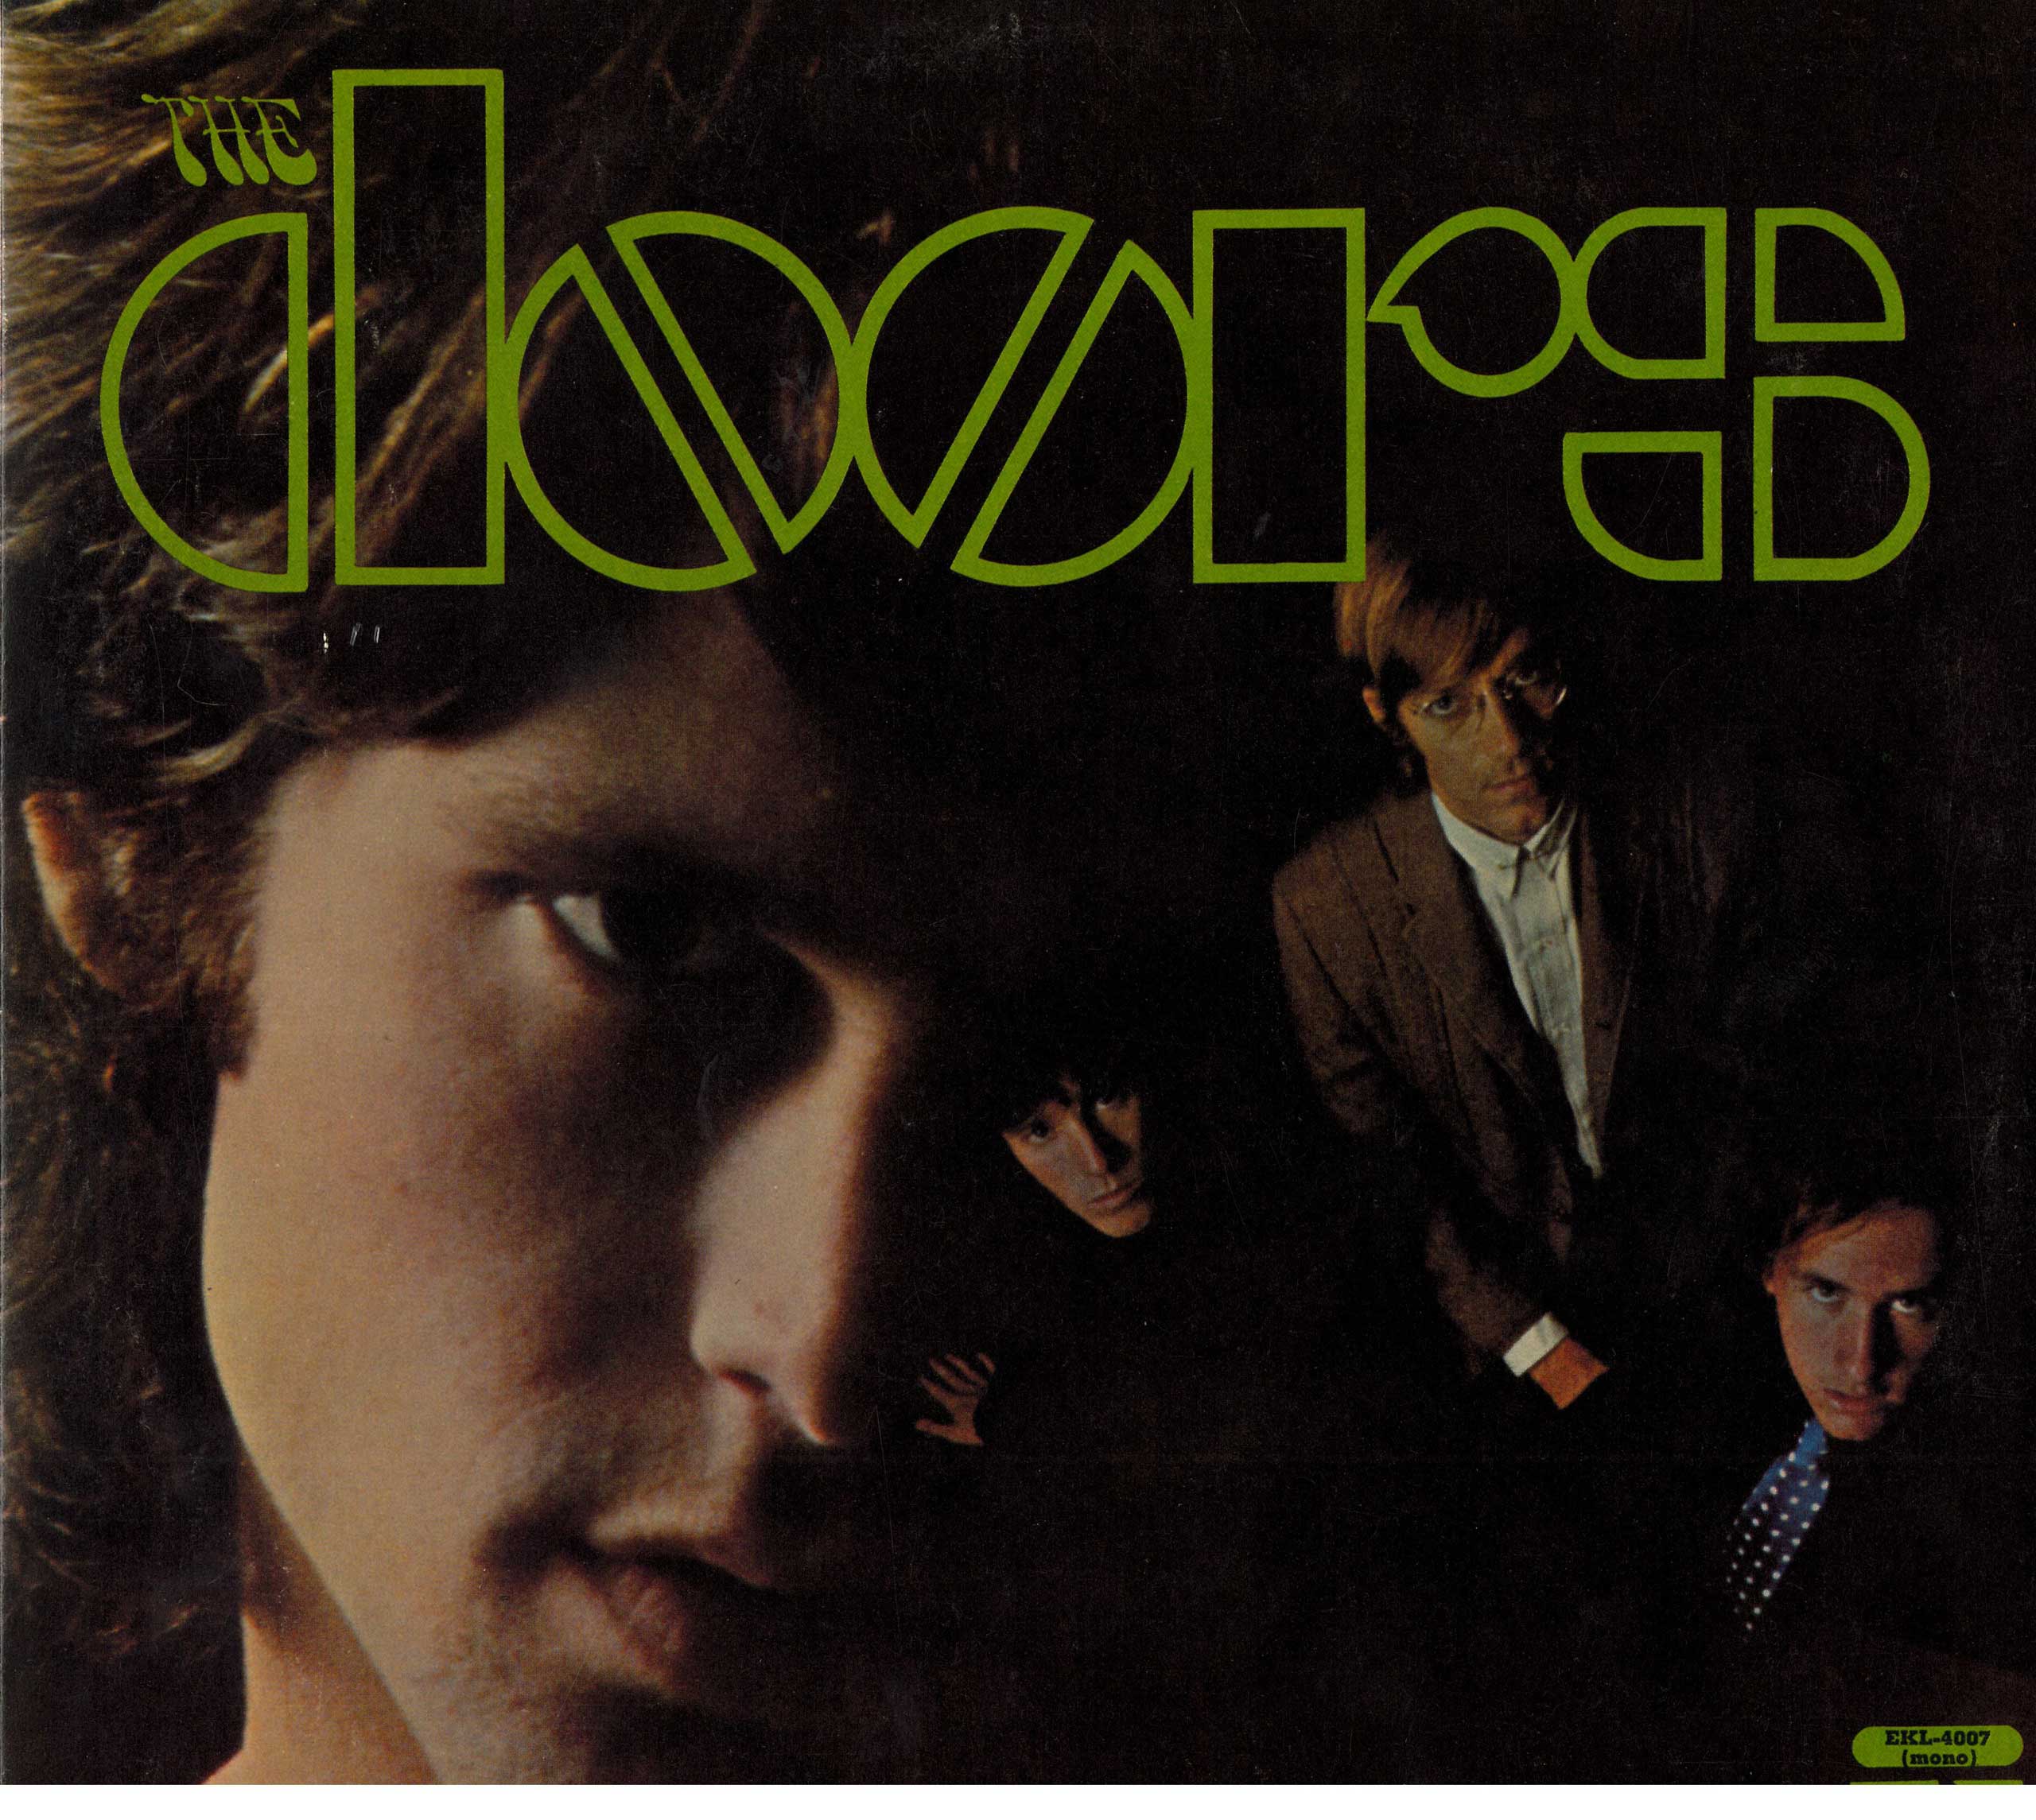 "The Doors" original album. Courtesy Elektra.